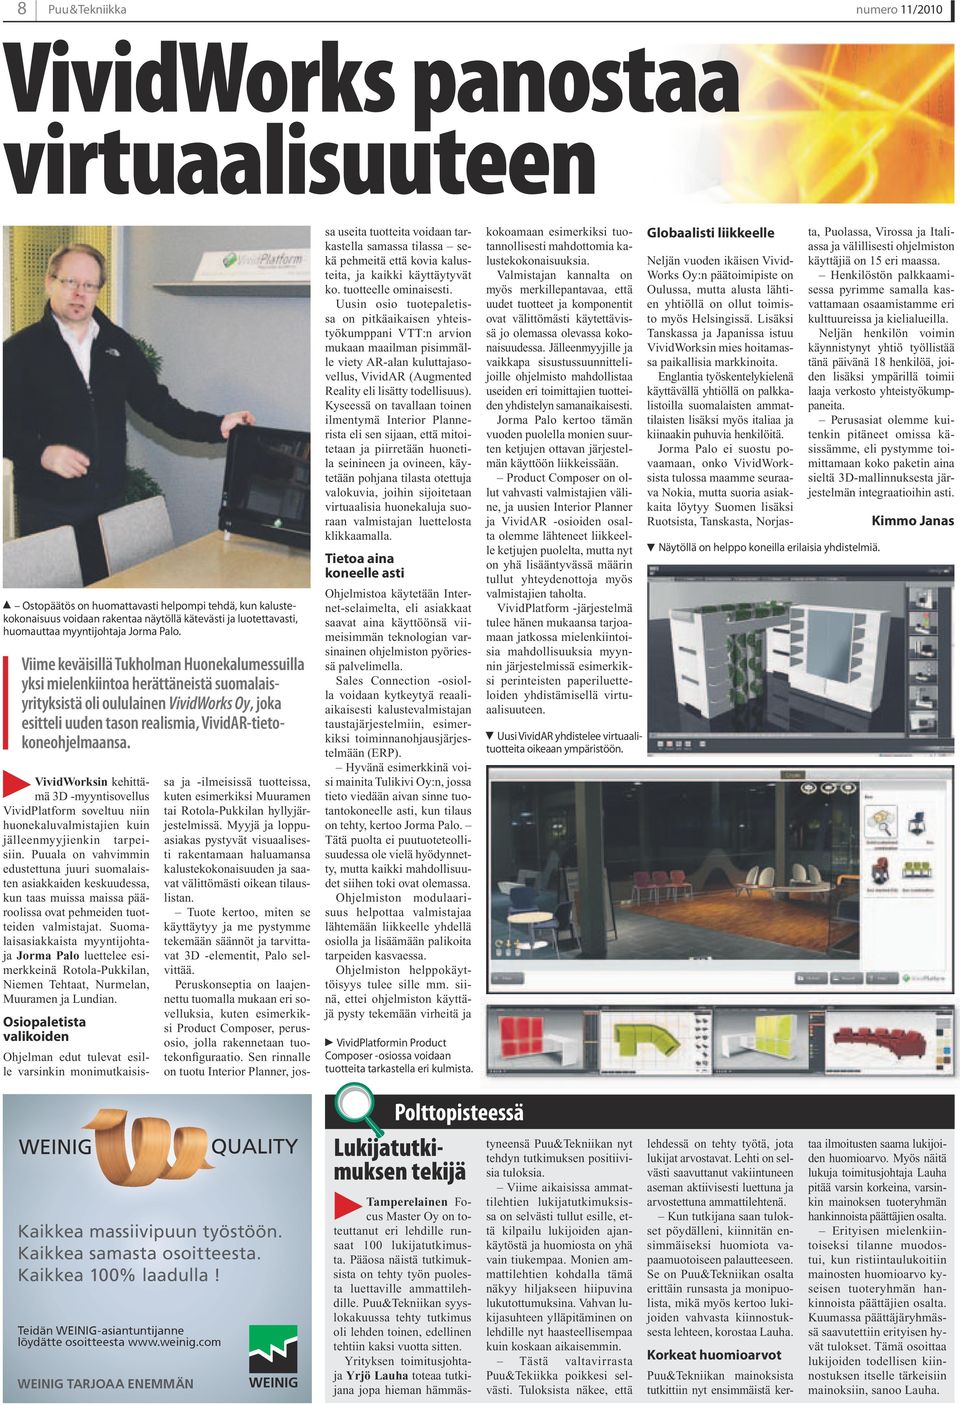 Viime keväisillä Tukholman Huonekalumessuilla yksi mielenkiintoa herättäneistä suomalaisyrityksistä oli oululainen VividWorks Oy, joka esitteli uuden tason realismia, VividAR-tietokoneohjelmaansa.